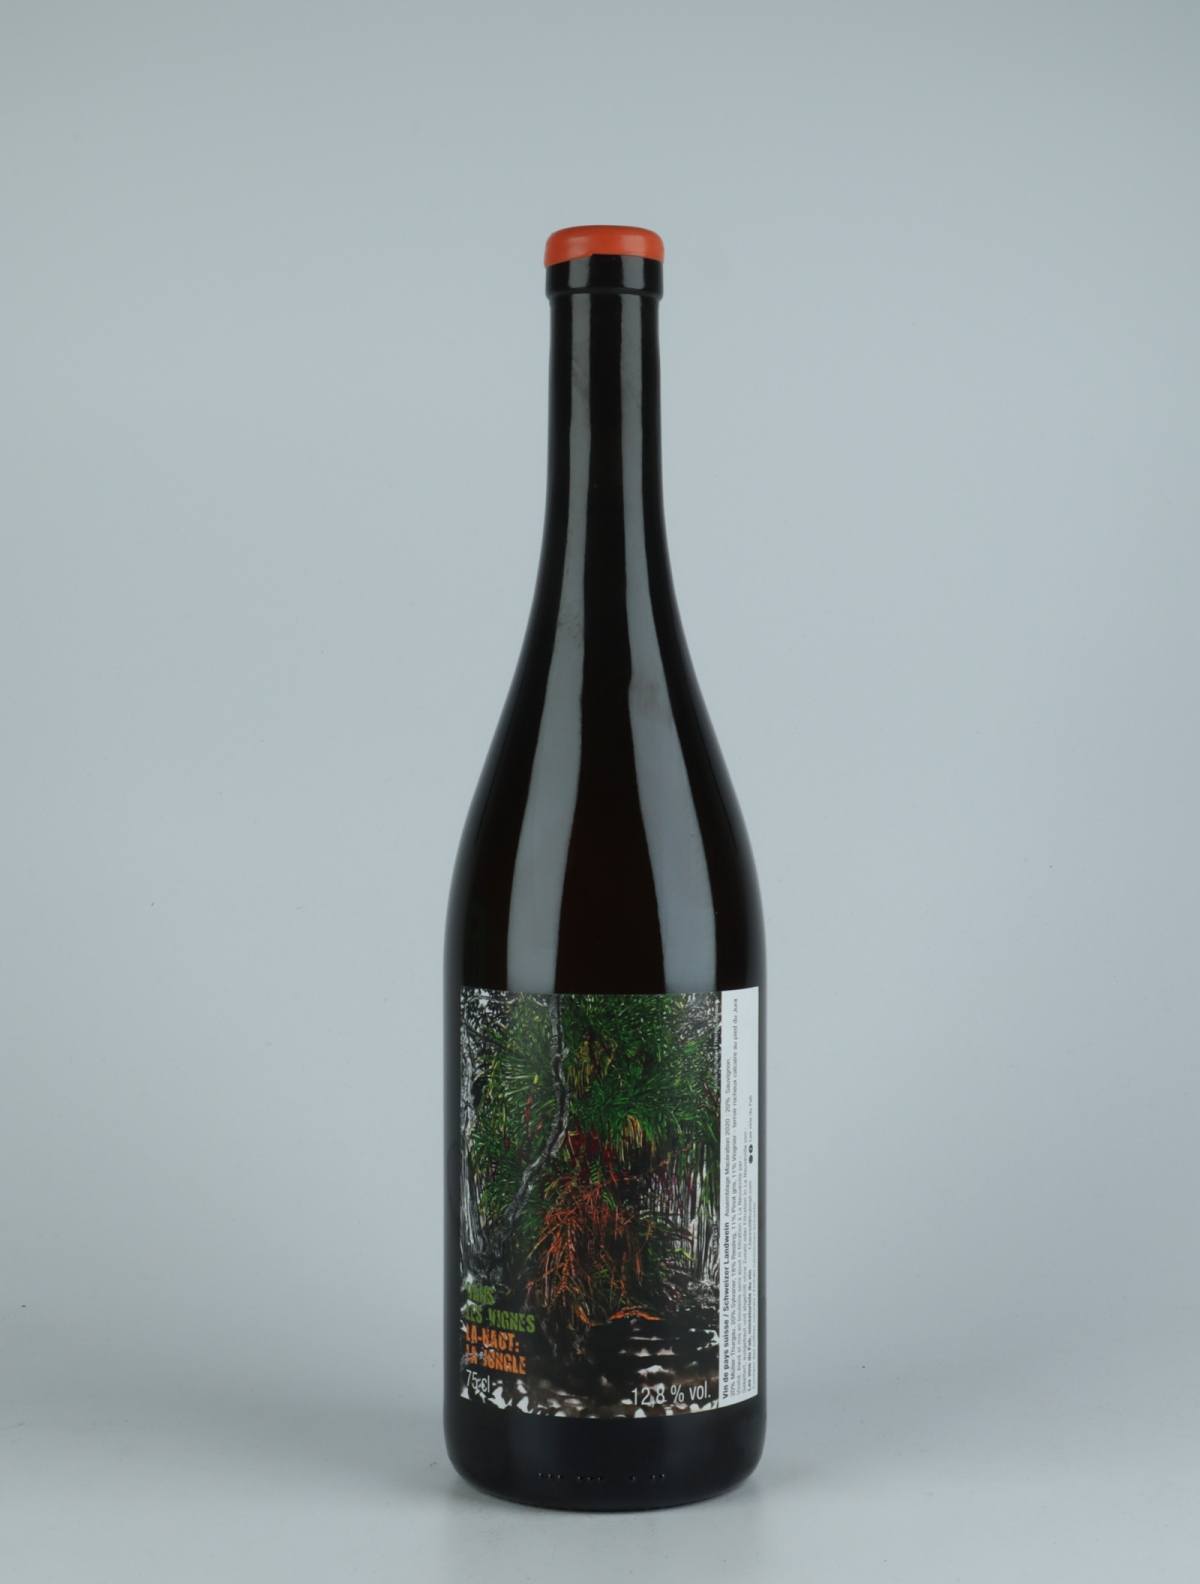 A bottle 2020 Dans les Vignes La-Haut: La Jungle Orange wine from Les Vins du Fab, Neuchâtel in Switzerland